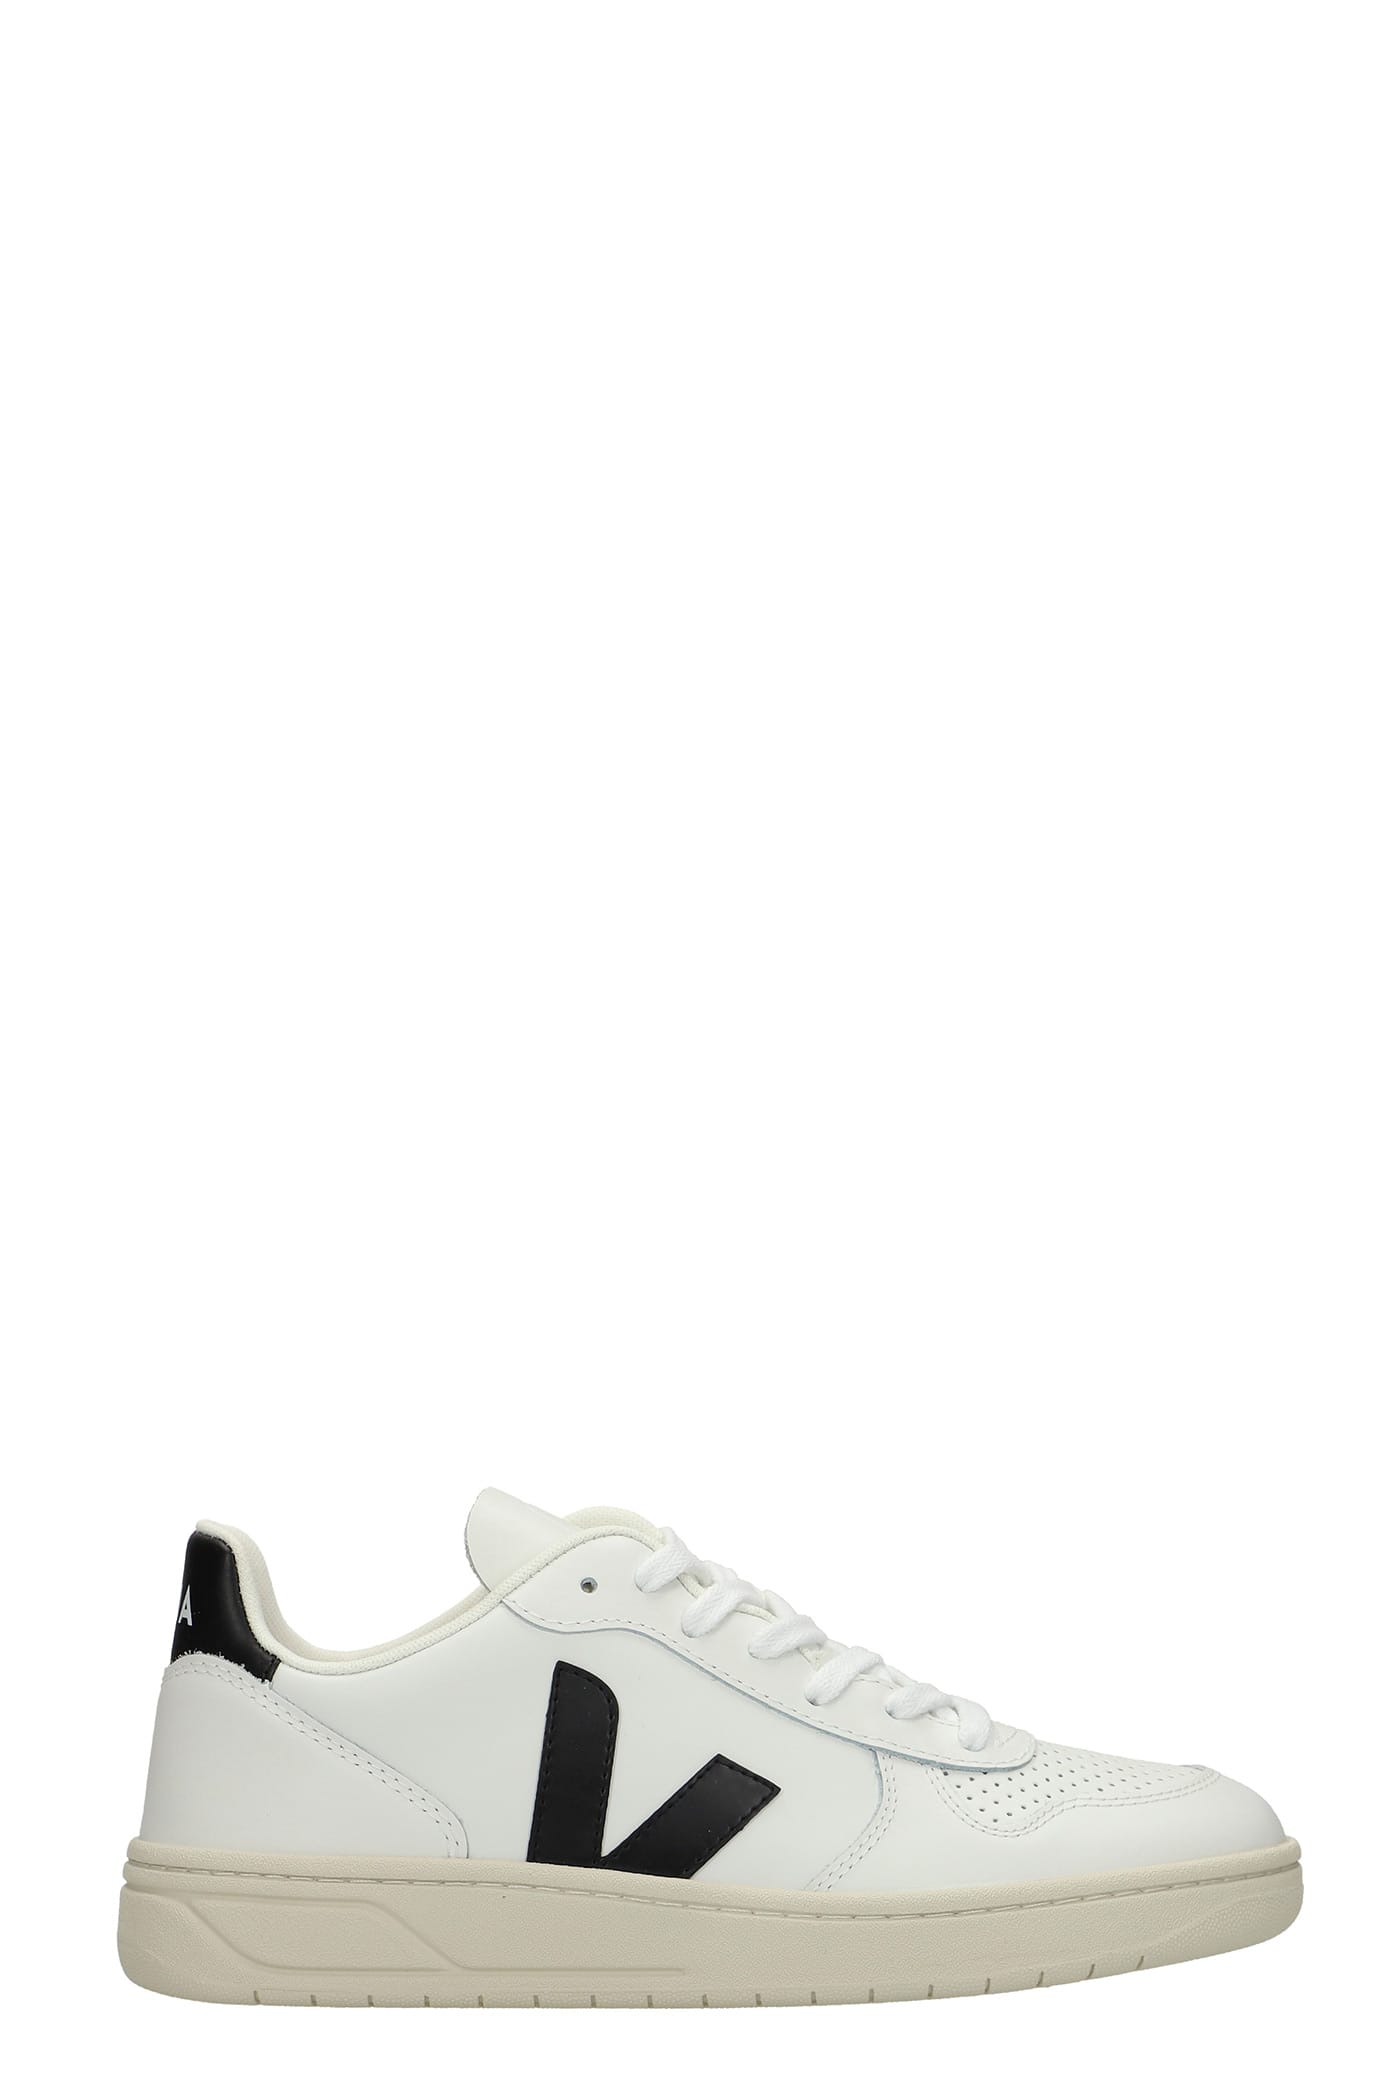 Veja V-10 Sneakers In White Leather